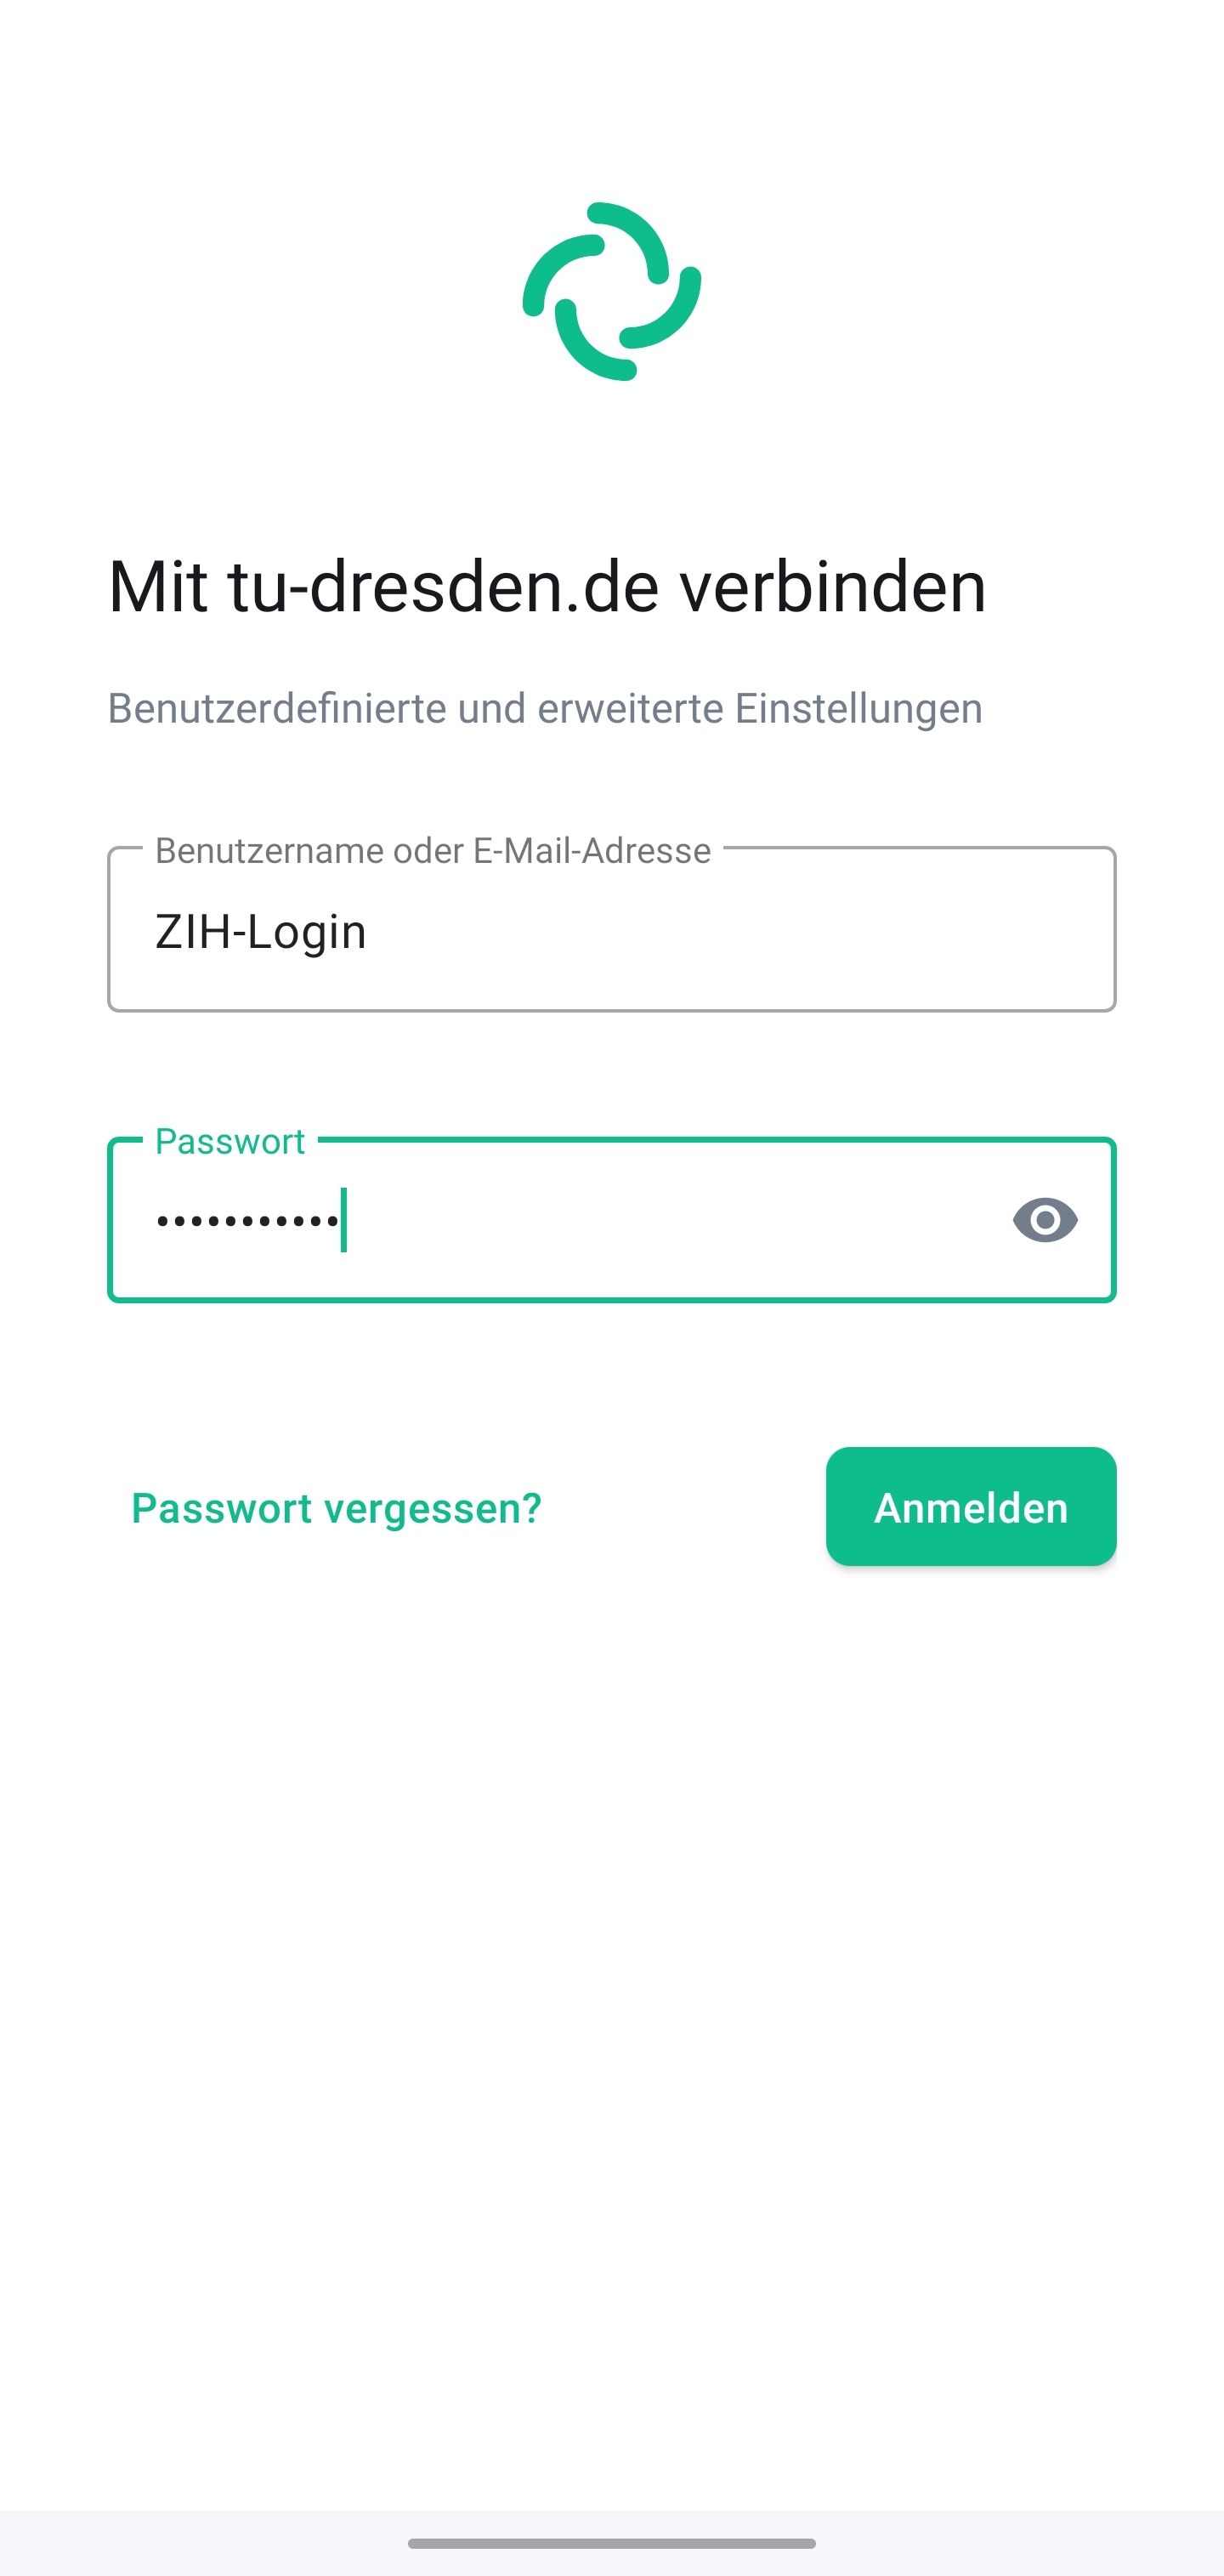 Bildschirm “Mit tu-dresden.de” verbinden erwartet im Textfeld “Benutzername oder E-Mail-Adresse” die Eingabe des ZIH-Logins und das Textfeld “Passwort” die Eingabe des ZIH-Passworts. Zum Verbinden befindet sich der Button “Anmelden” auf der Anzeige.